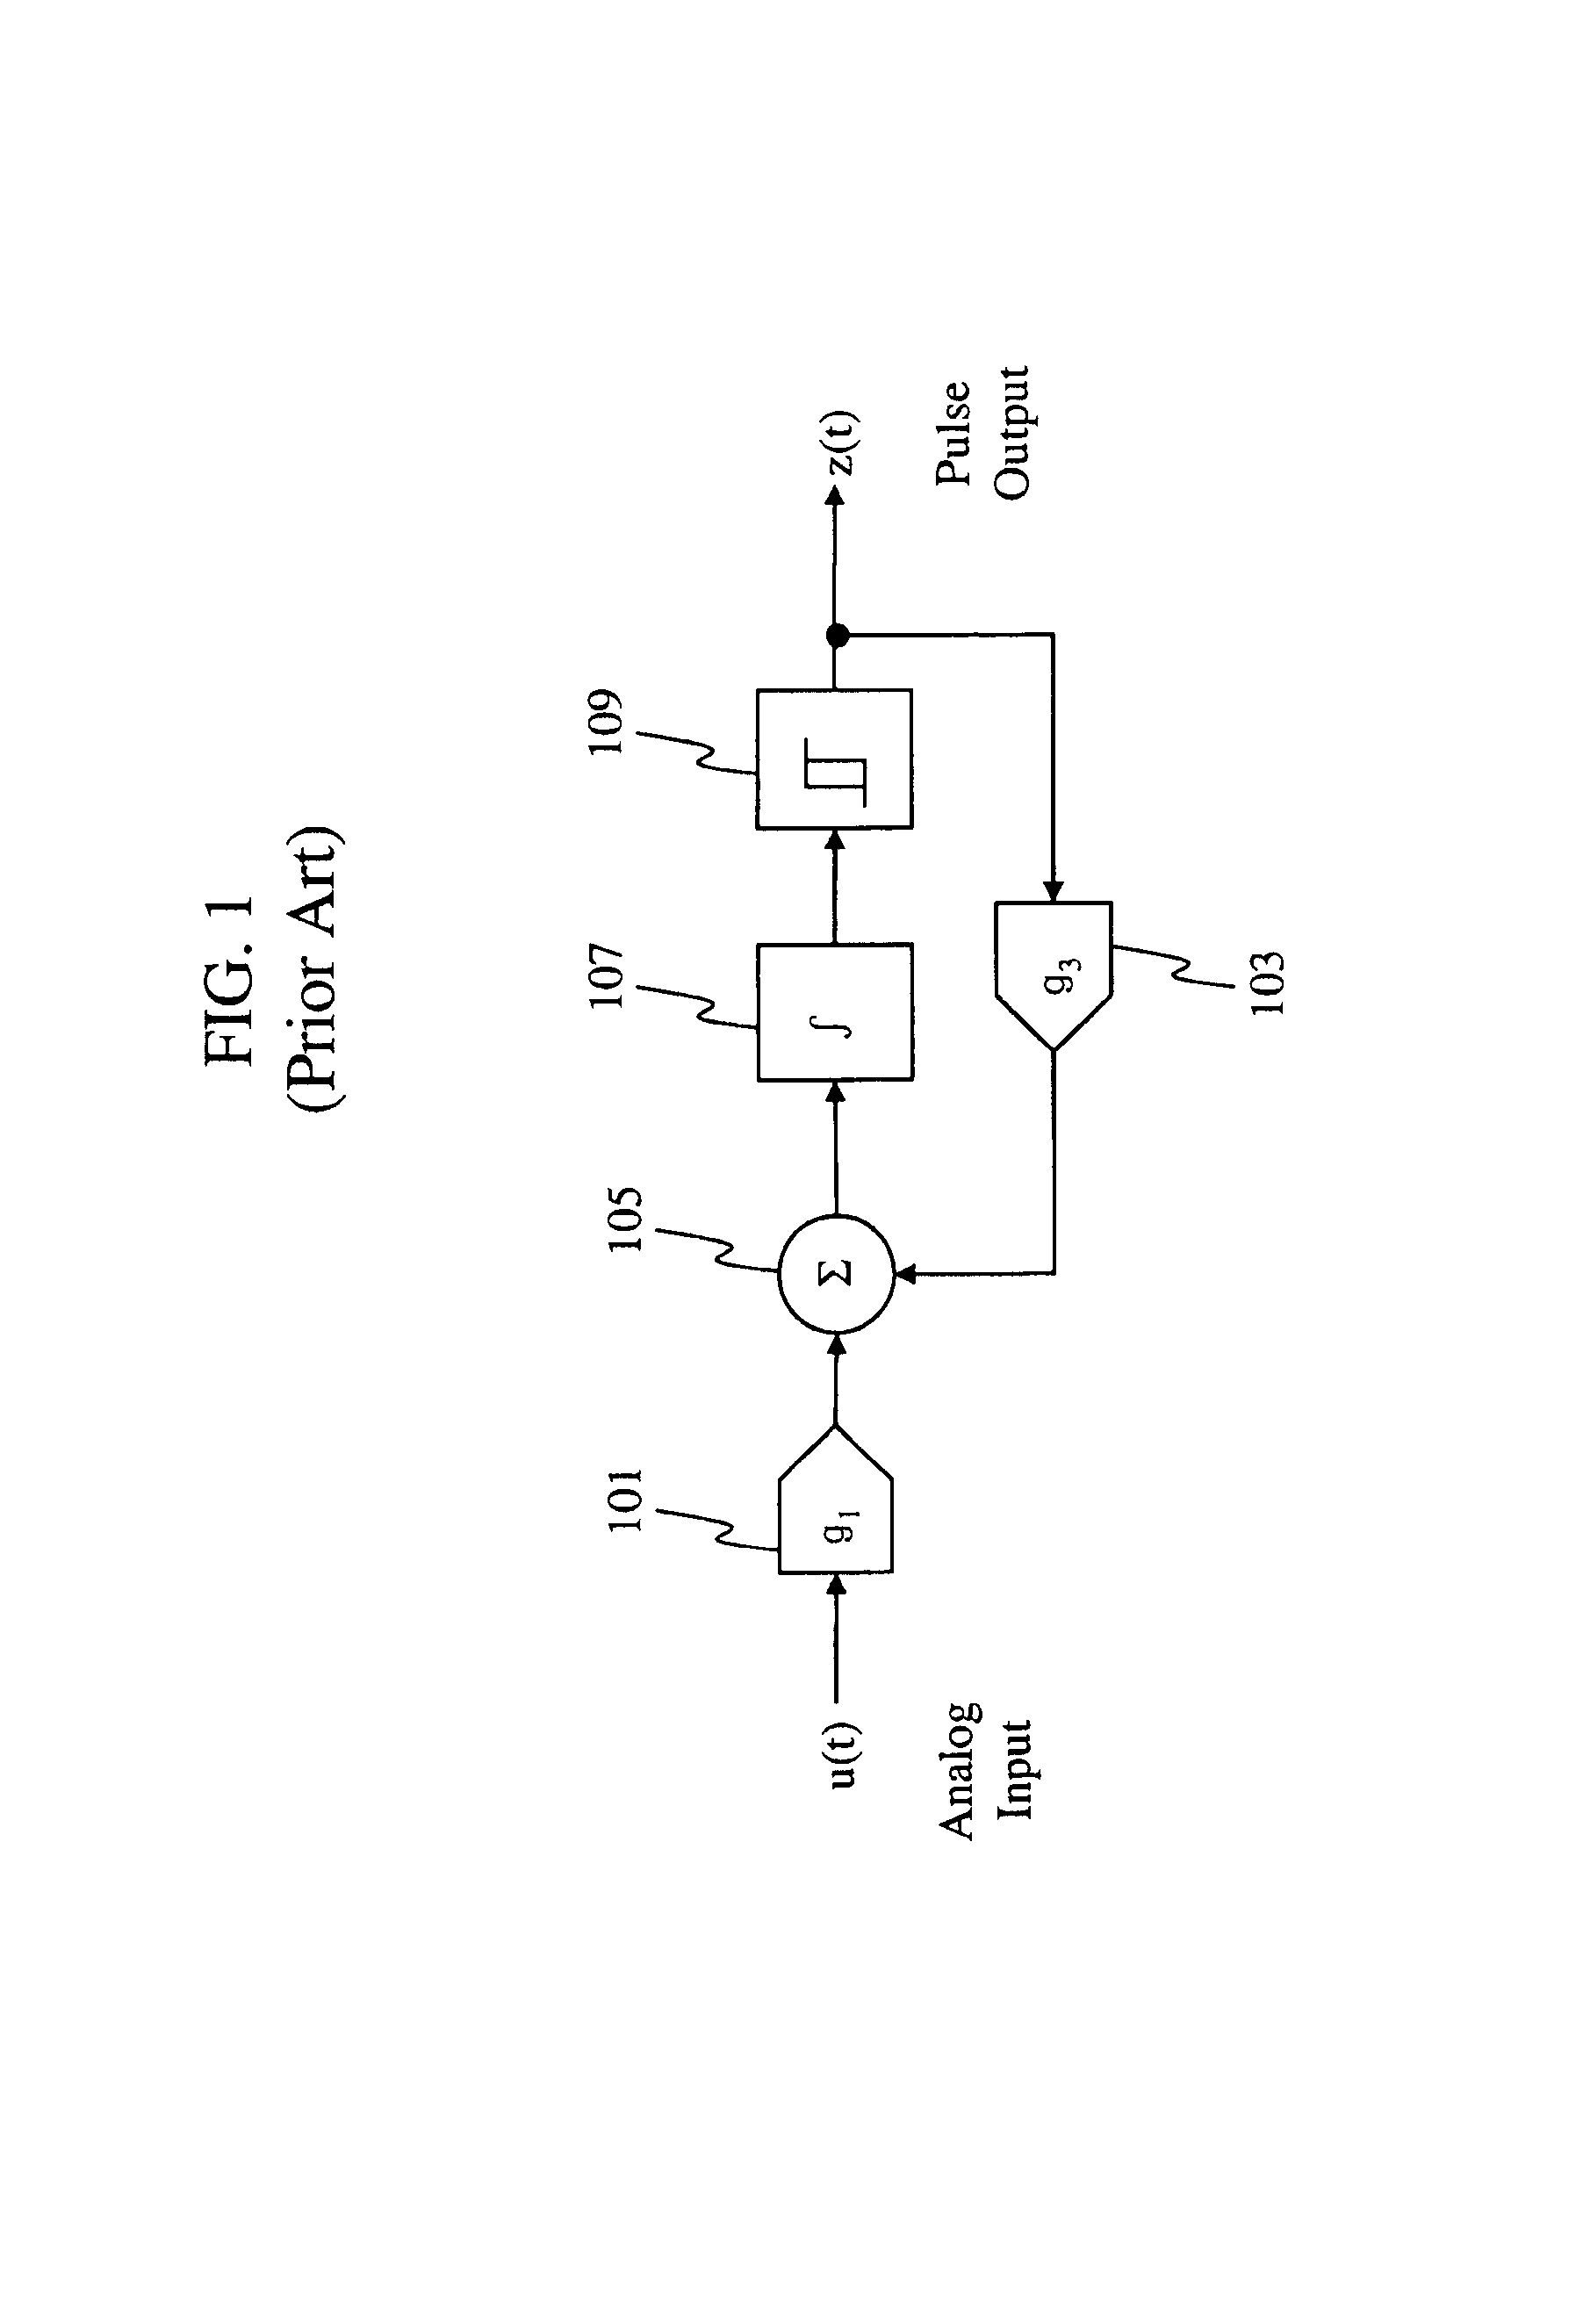 Pulse domain encoder and filter circuits